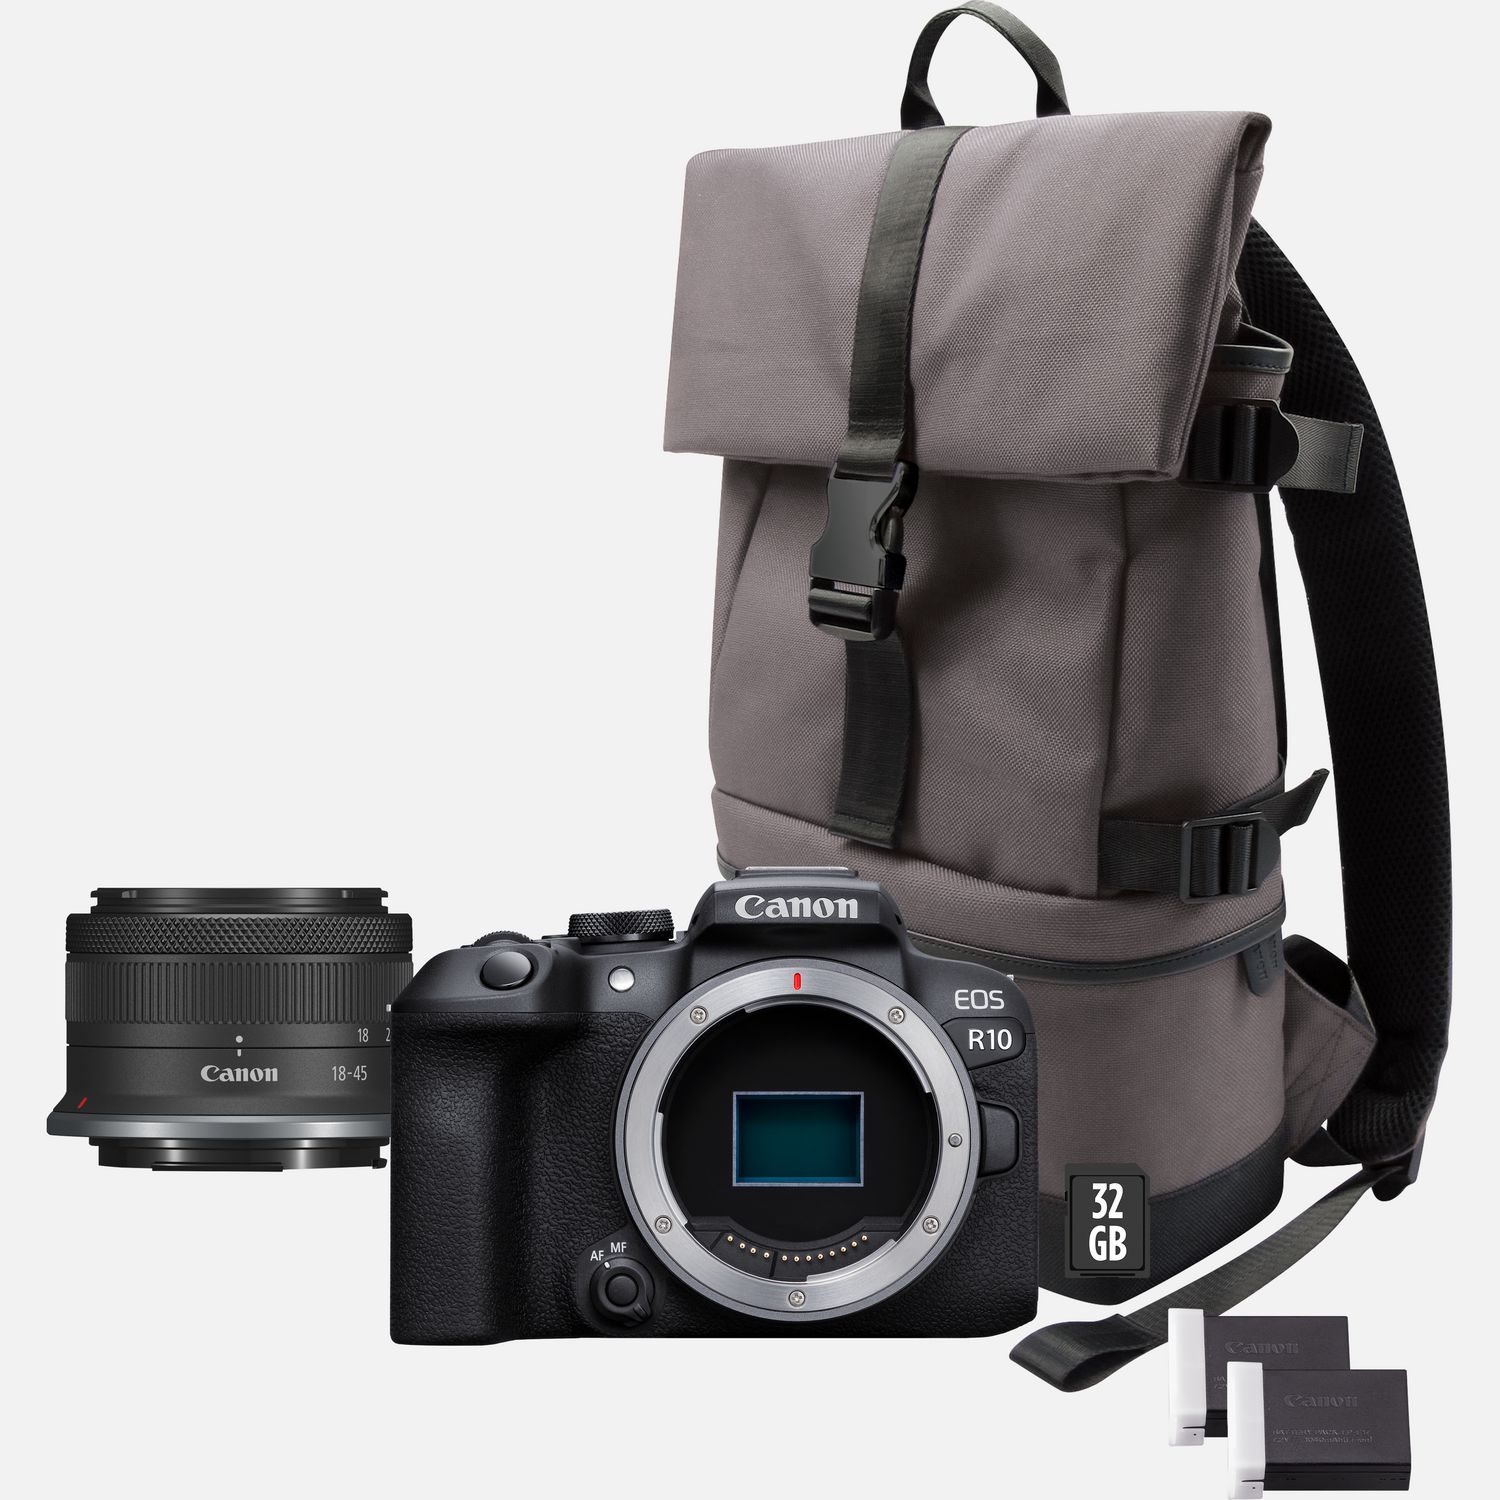 Buy Canon EOS R10 spiegellose Kamera + RF-S 18-45mm F4.5-6.3 IS STM Objektiv  + Rucksack + SD-Karte + Ersatzakku in WLAN-Kameras — Canon Schweiz Shop